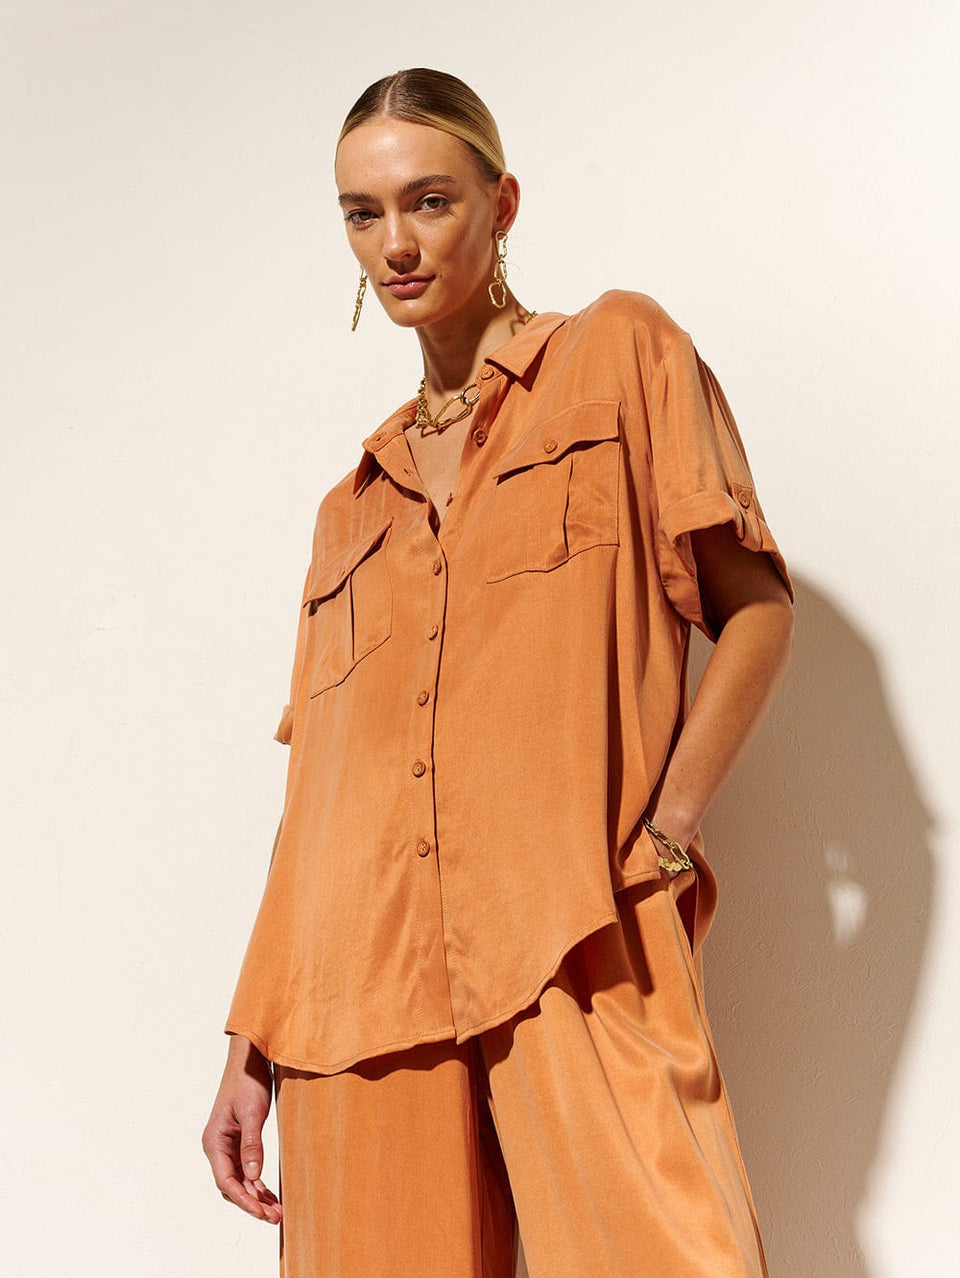 KIVARI Bianca Shirt | Model wears Orange Shirt Close Up